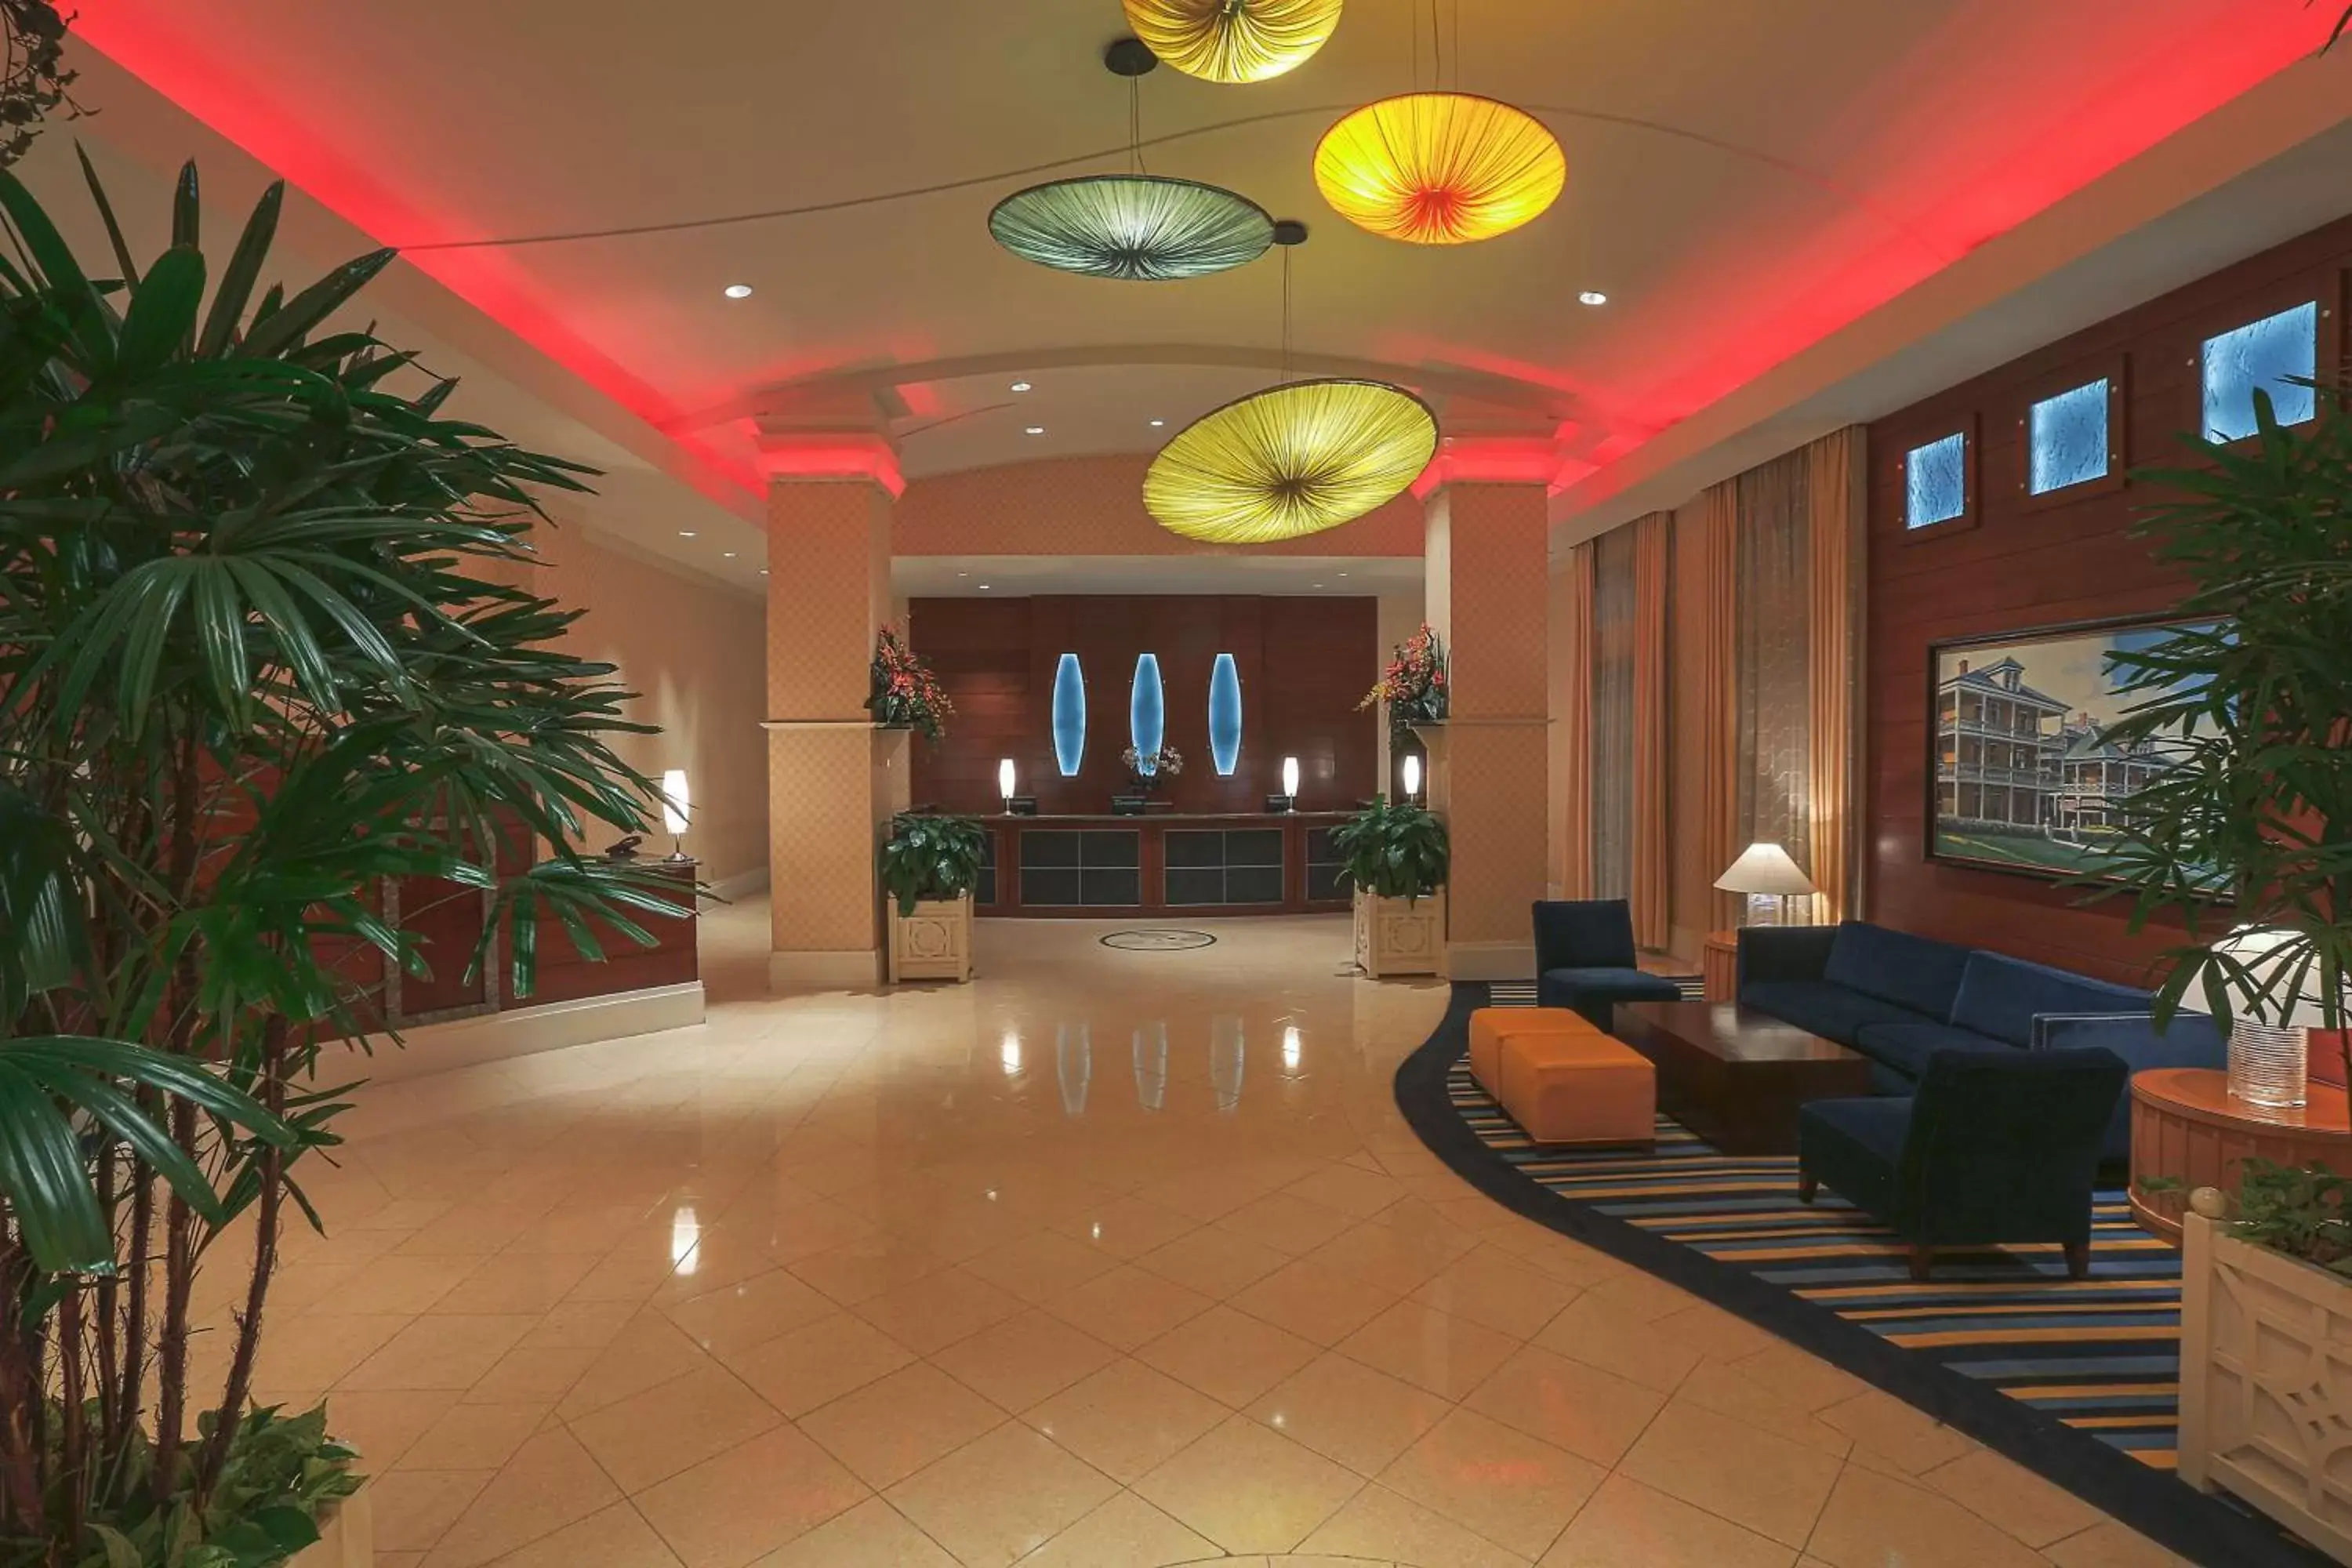 Lobby or reception, Lobby/Reception in Hilton Virginia Beach Oceanfront